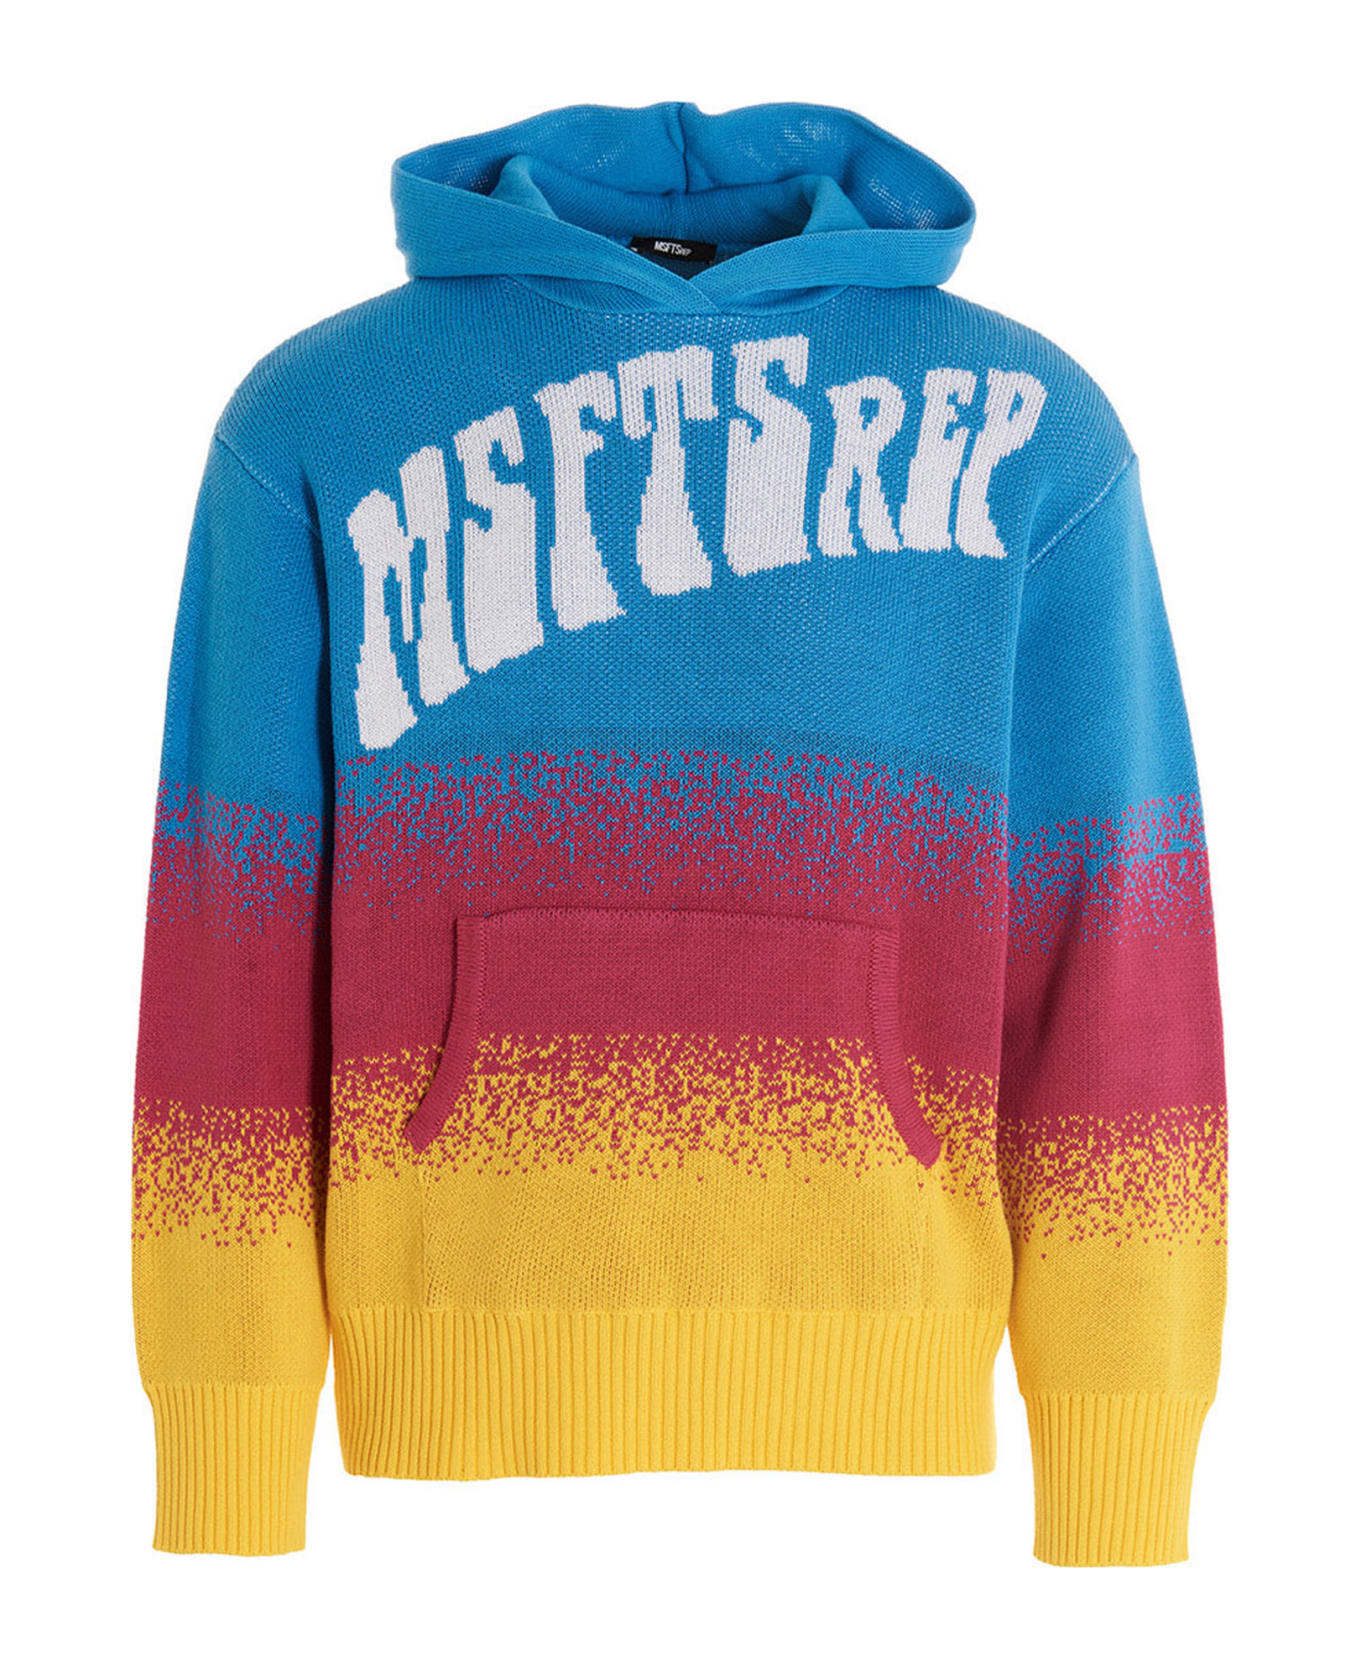 MSFTSrep Logo Hooded Sweater - Multicolor フリース